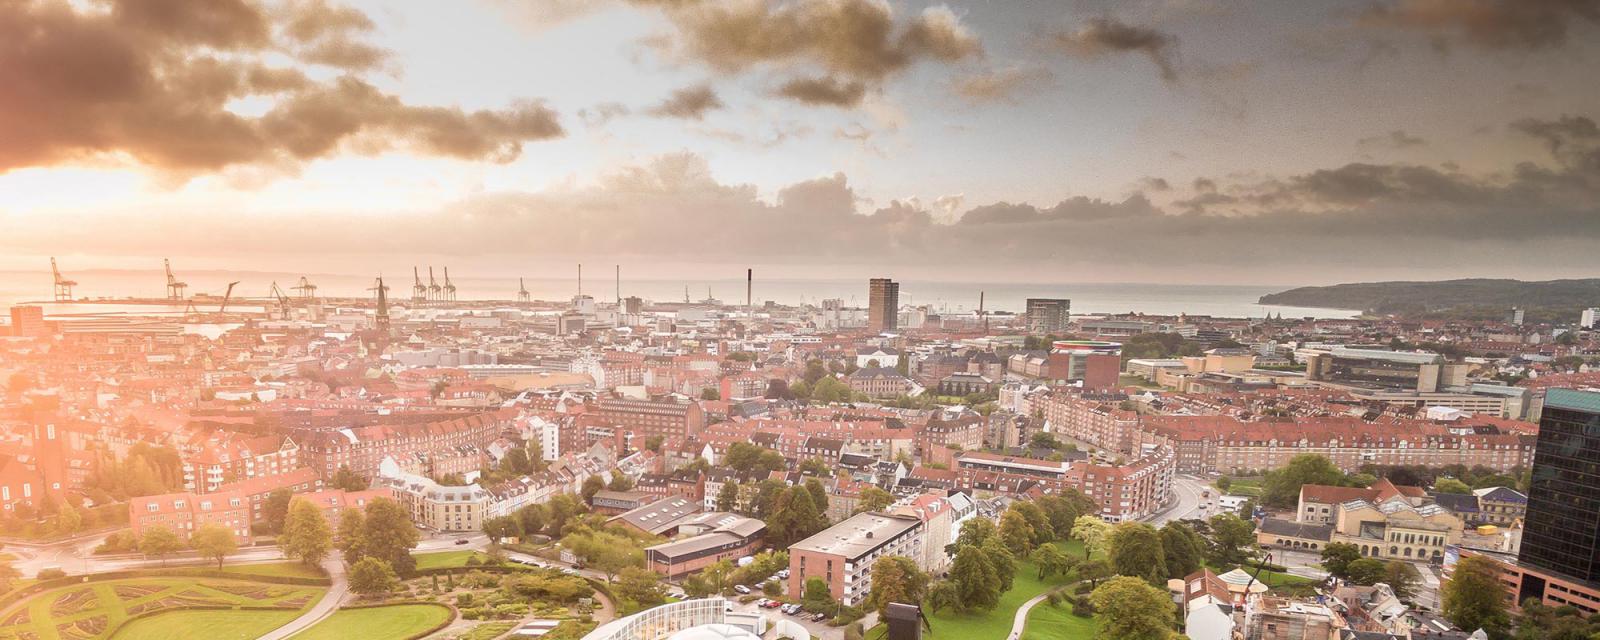 De top 5 bezienswaardigheden in Aarhus 